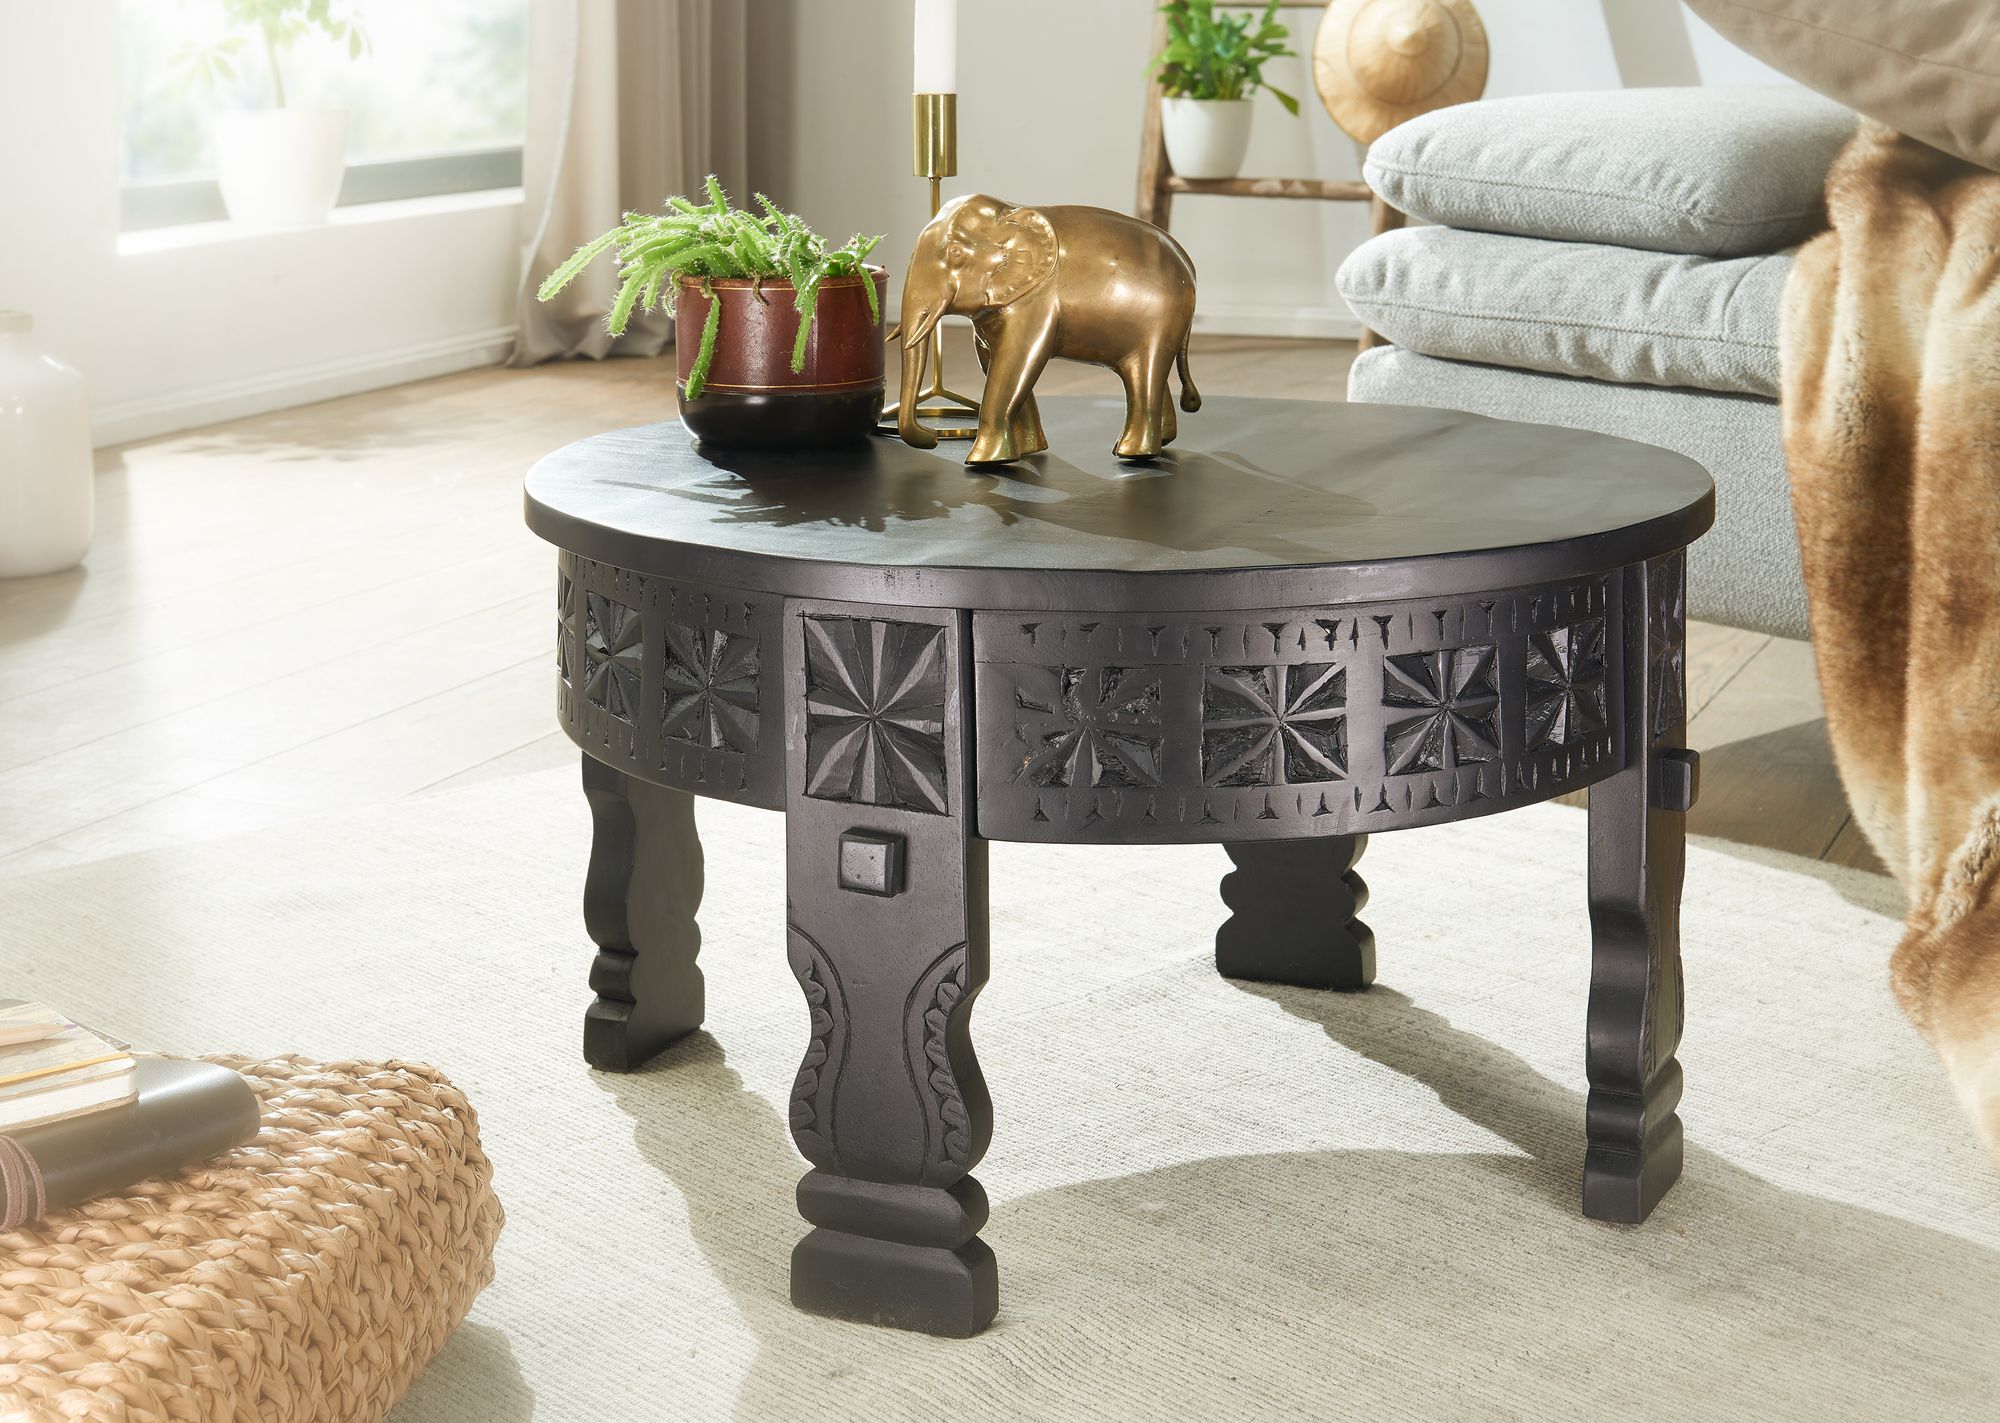 orientaalse salontafel zwart 60 cm